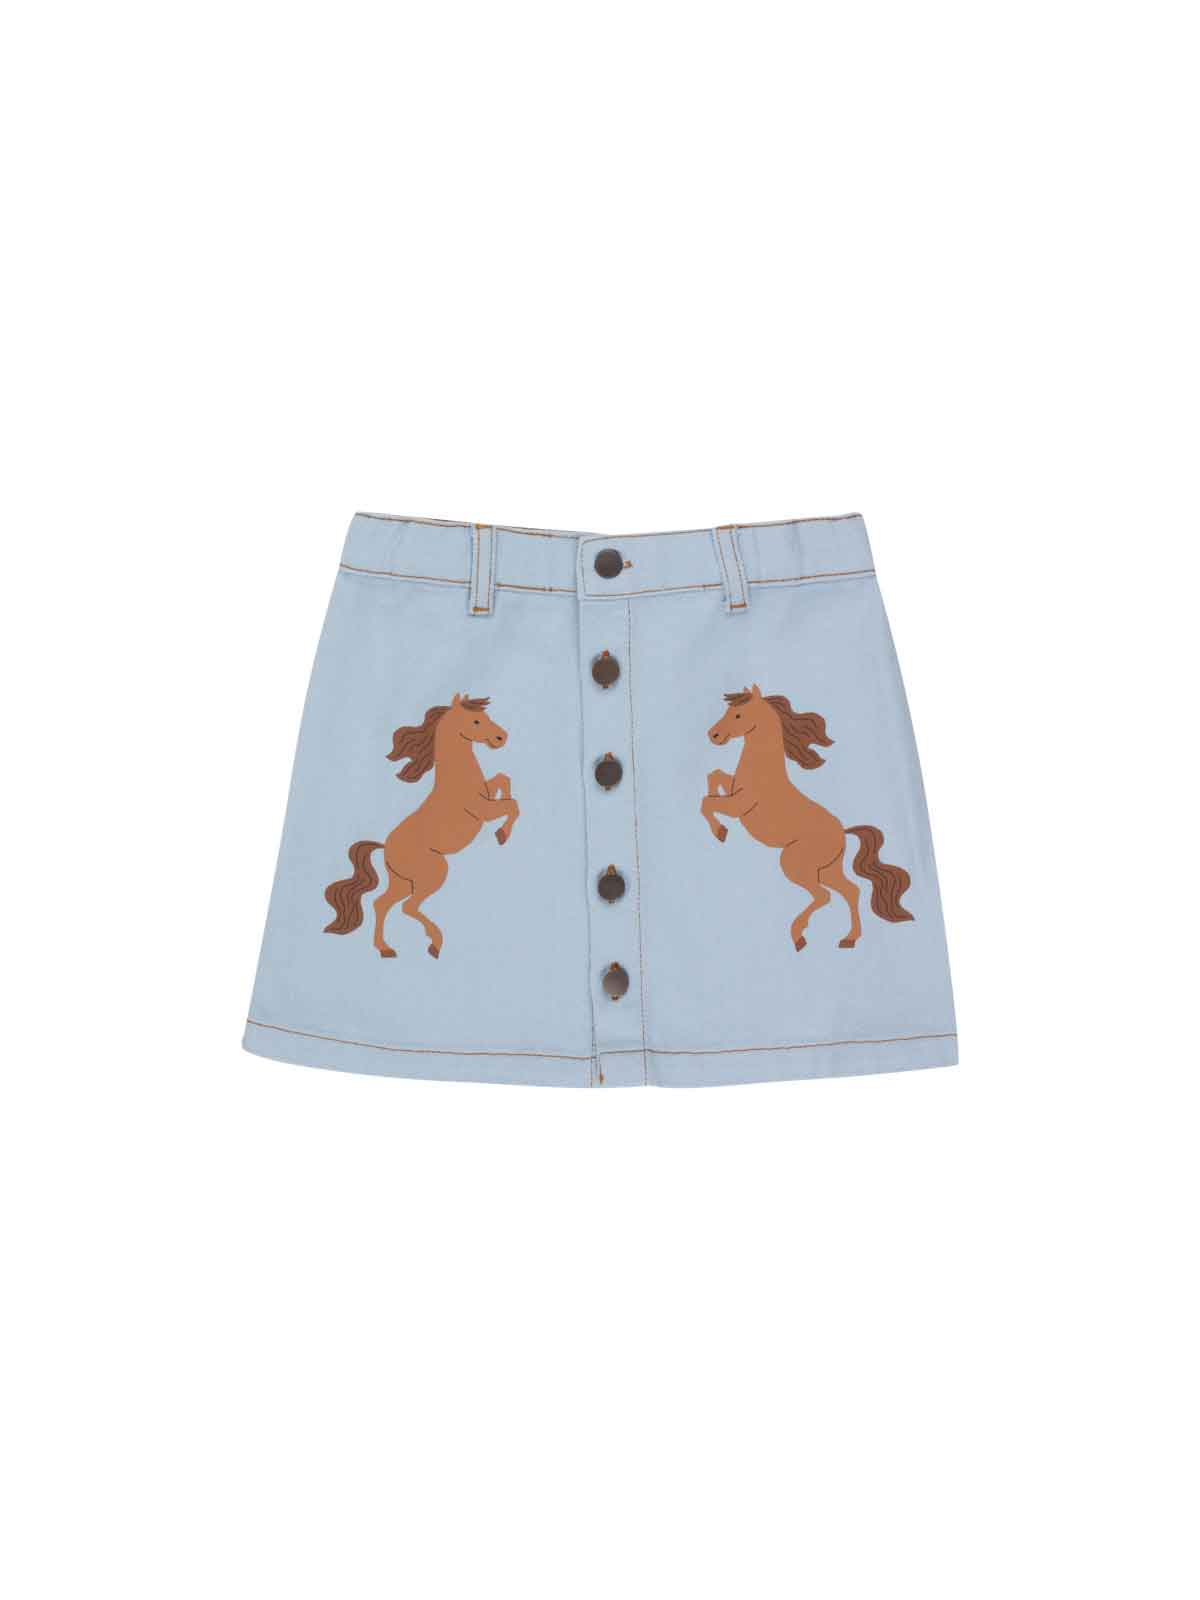 Horses Skirt